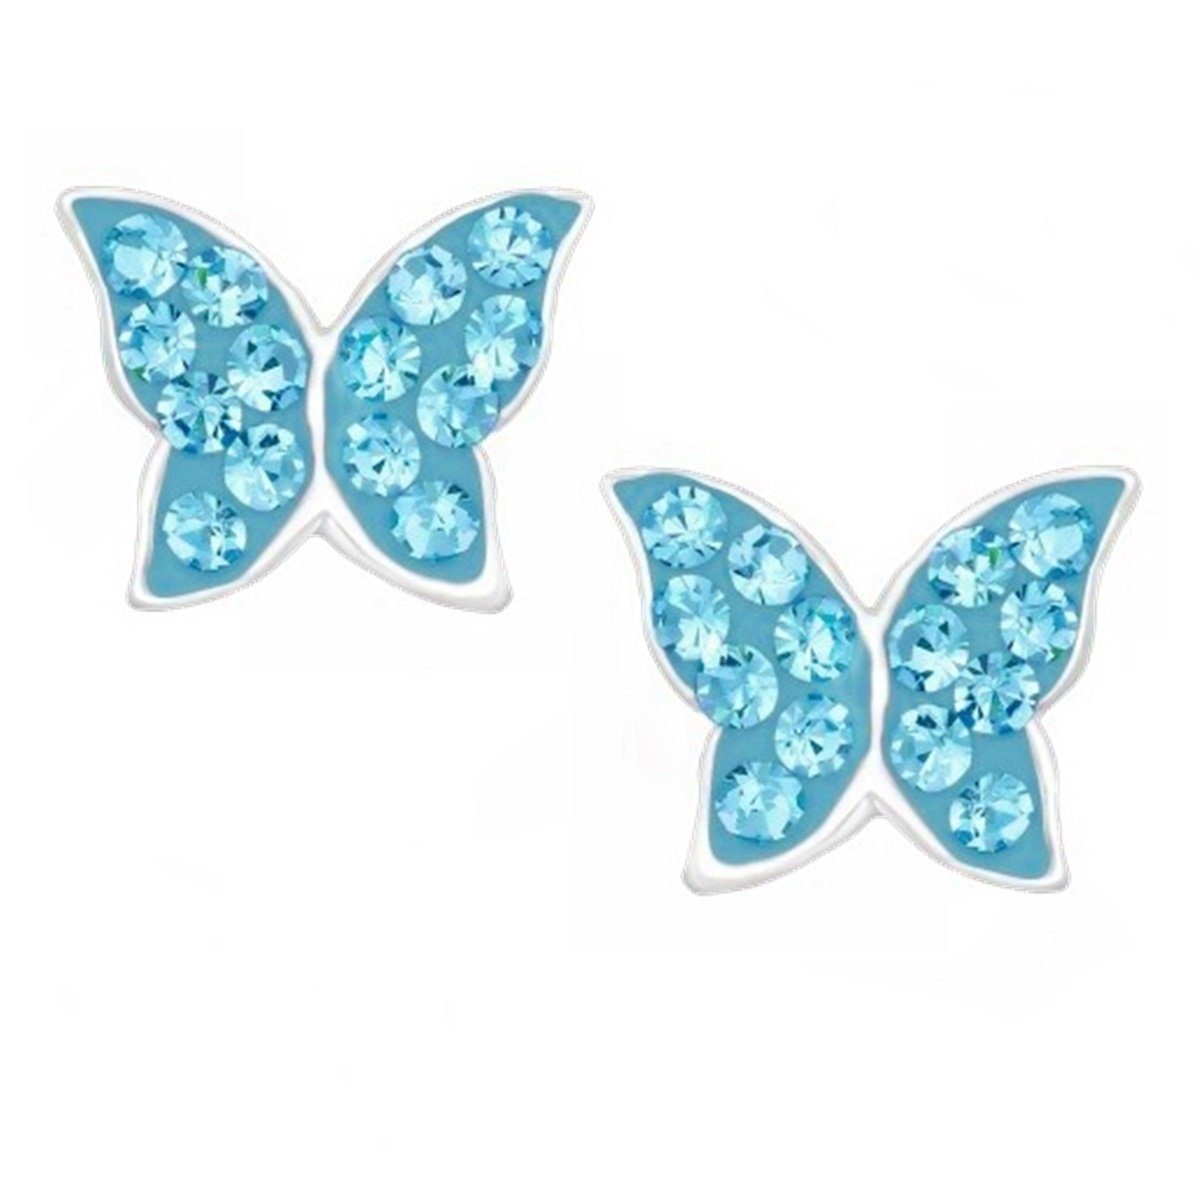 Goldene Hufeisen Paar Ohrstecker Schmetterling Ohrstecker Ohrringe aus 925 Sterling Silber mit Kristall (1 Paar, inkl. Etui), Mädchen Kinder Geschenkidee Blau